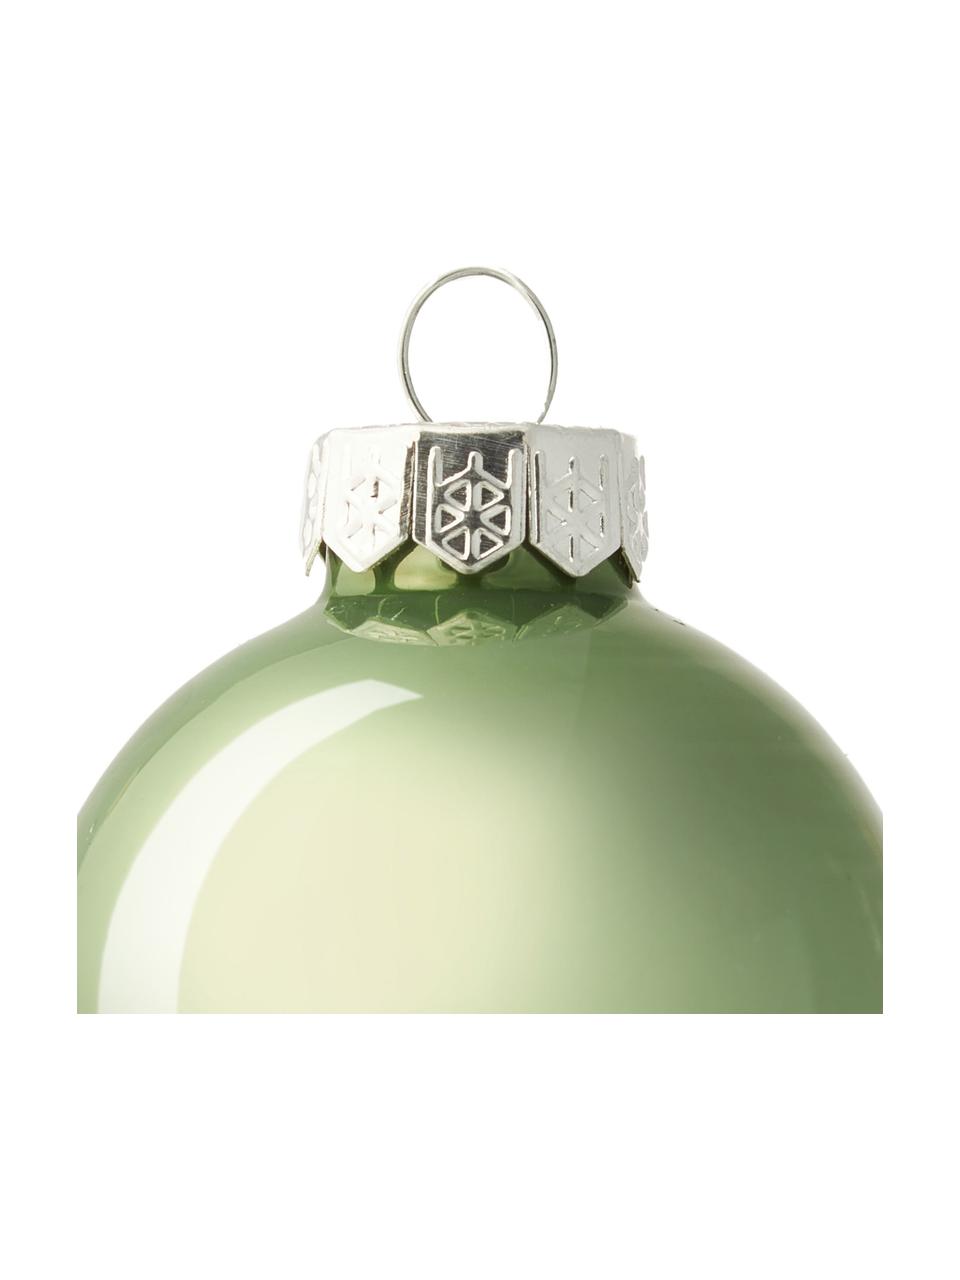 Kerstballenset Evergreen in groen, Groen, Ø 4 cm, 16 stuks